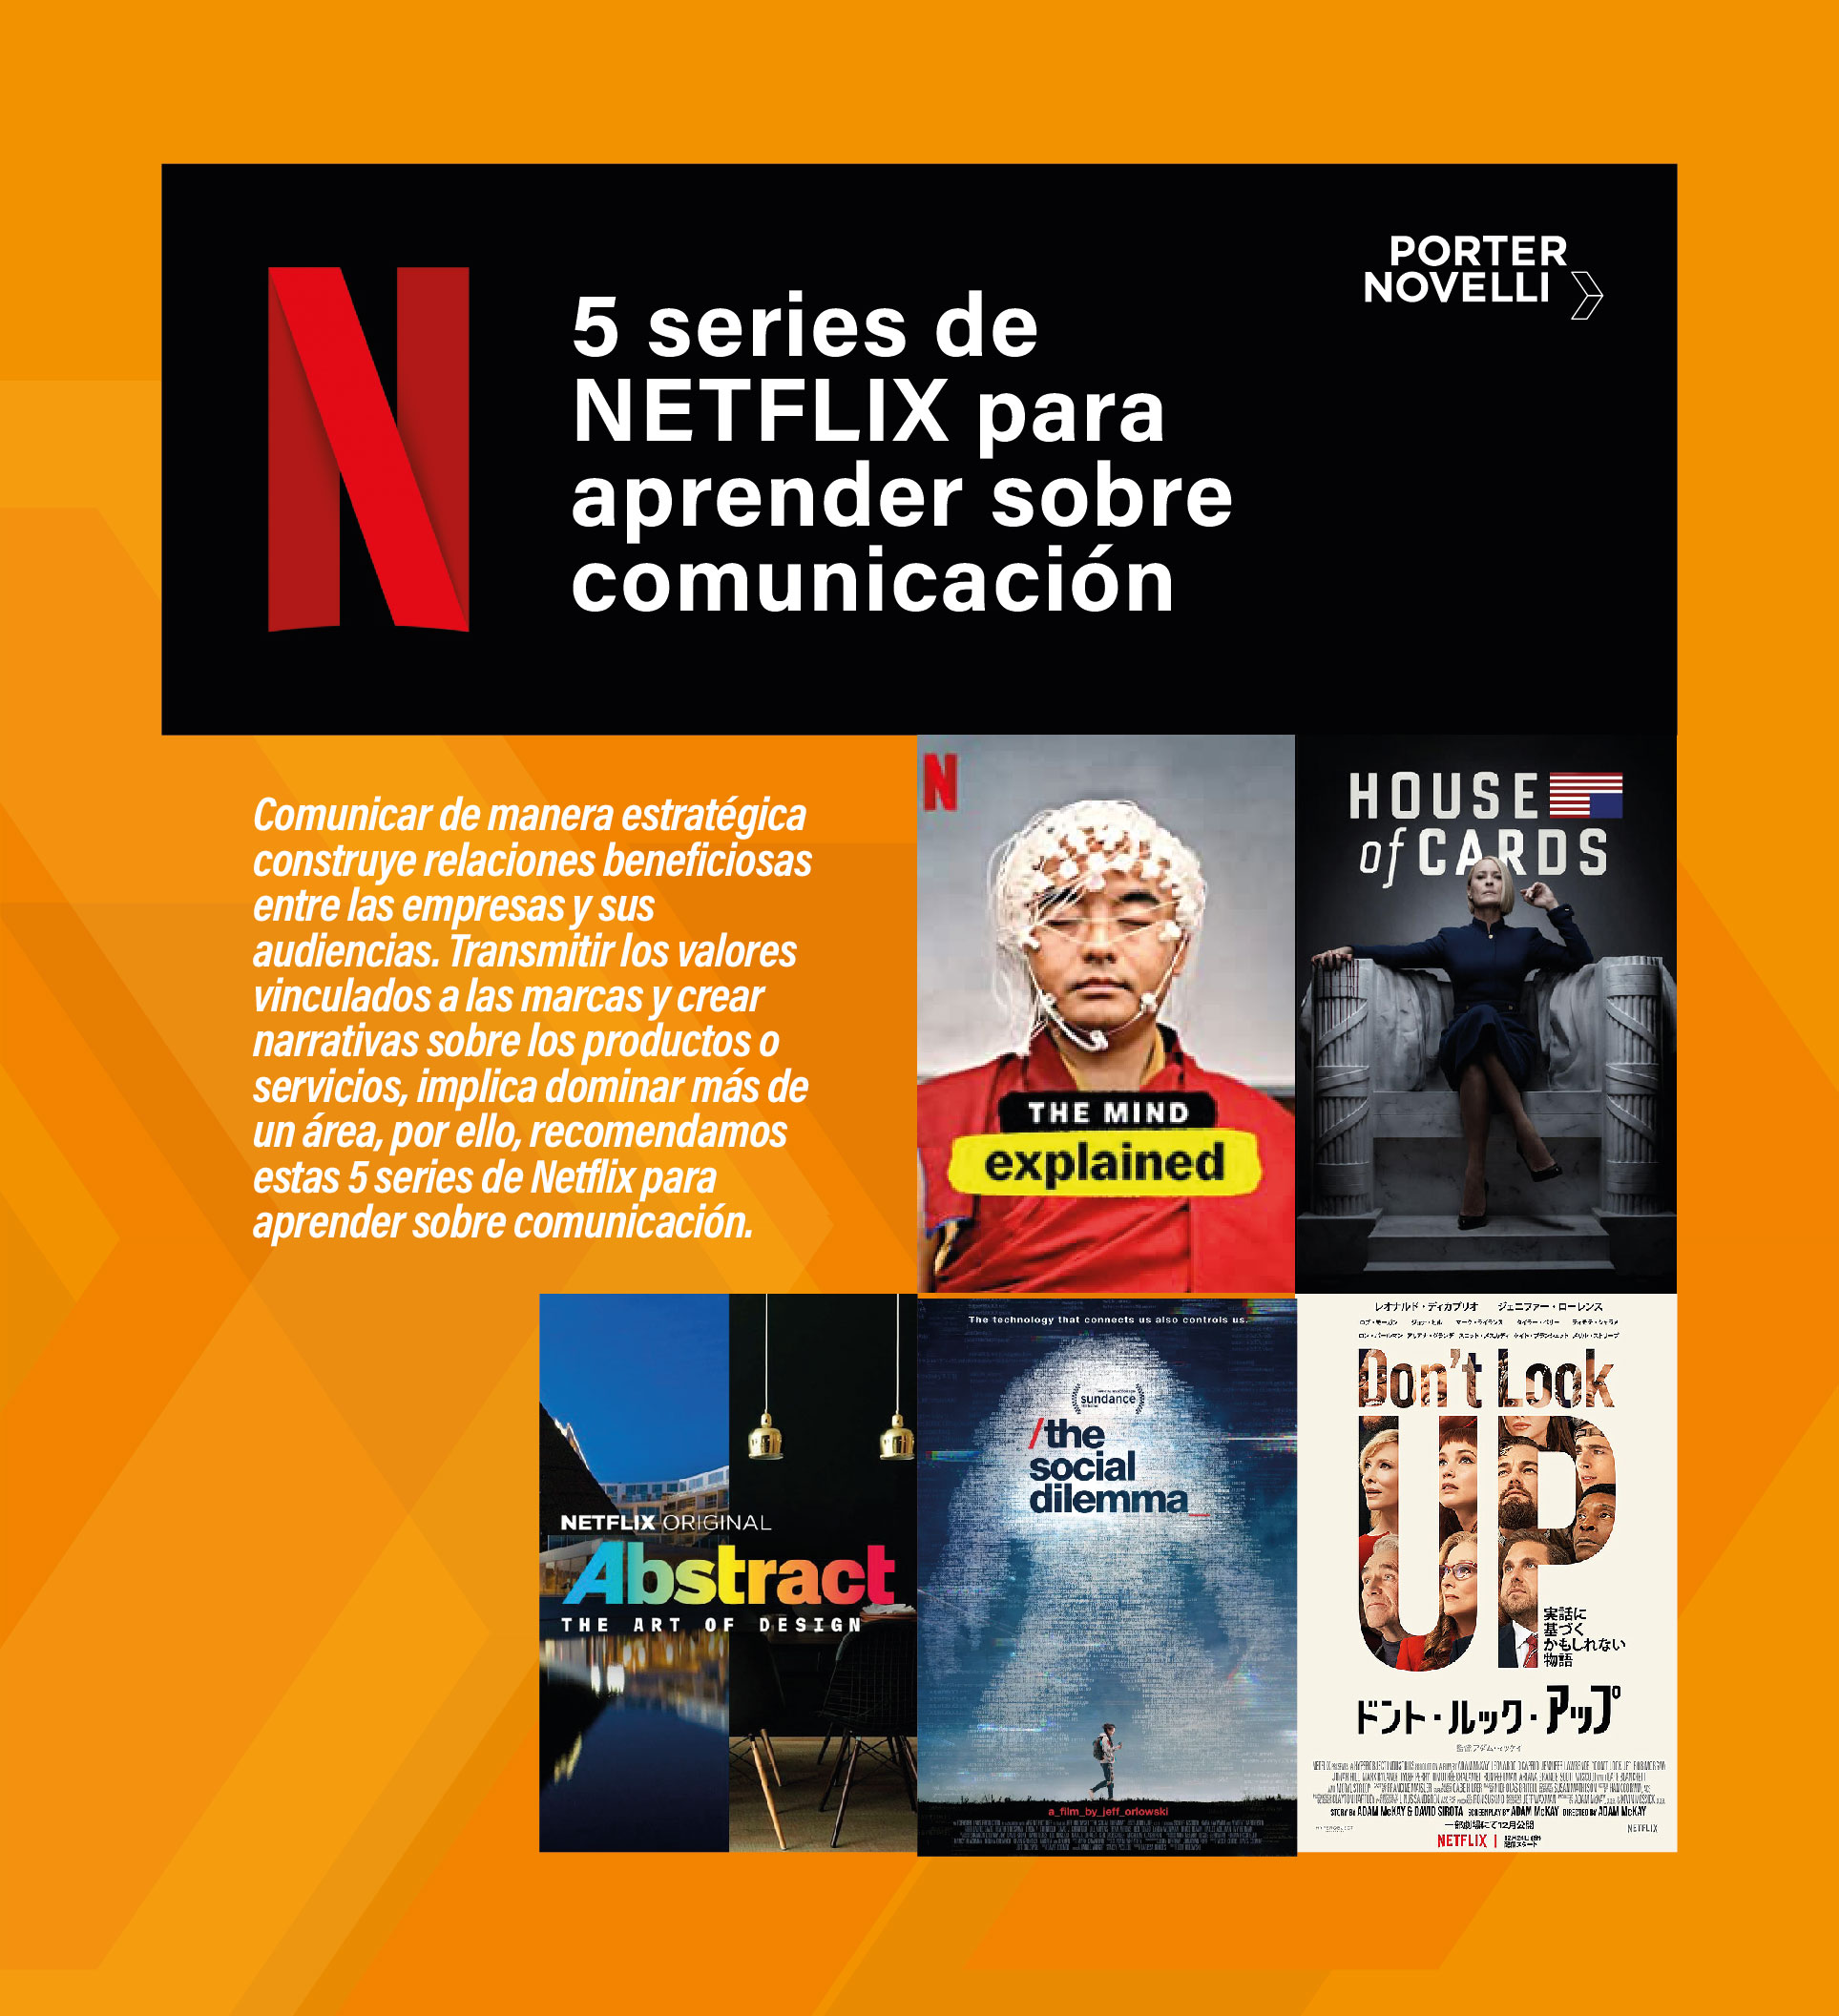 5 series de Netflix para aprender sobre comunicación